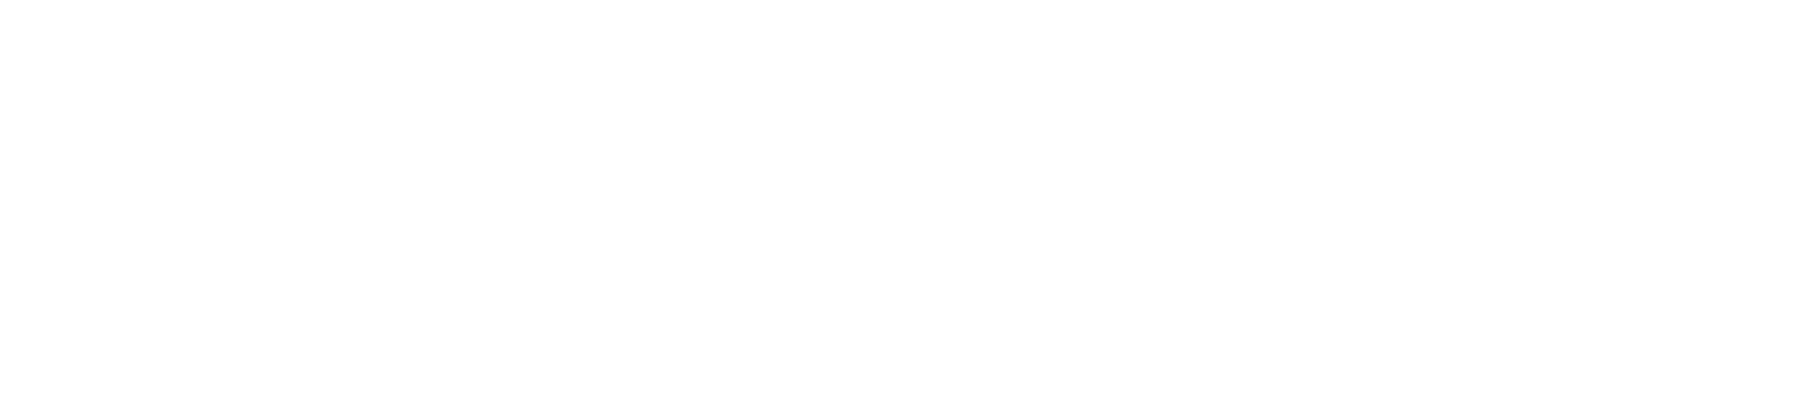 https://tealmedia.com/wp-content/uploads/2019/01/newseum-logo-white-500x111.png